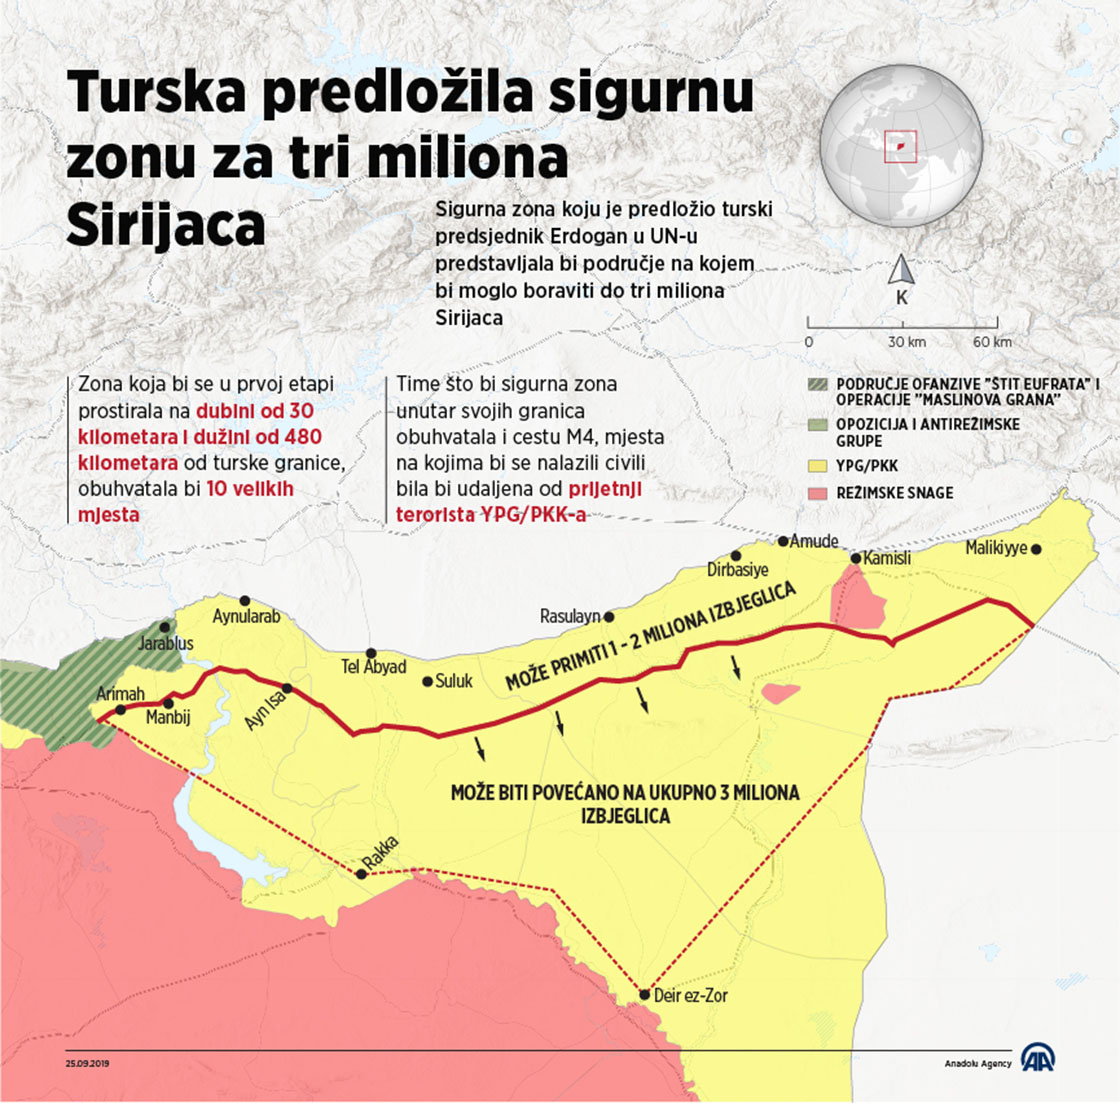 Turska predložila sigurnu zonu za tri miliona Sirijaca 